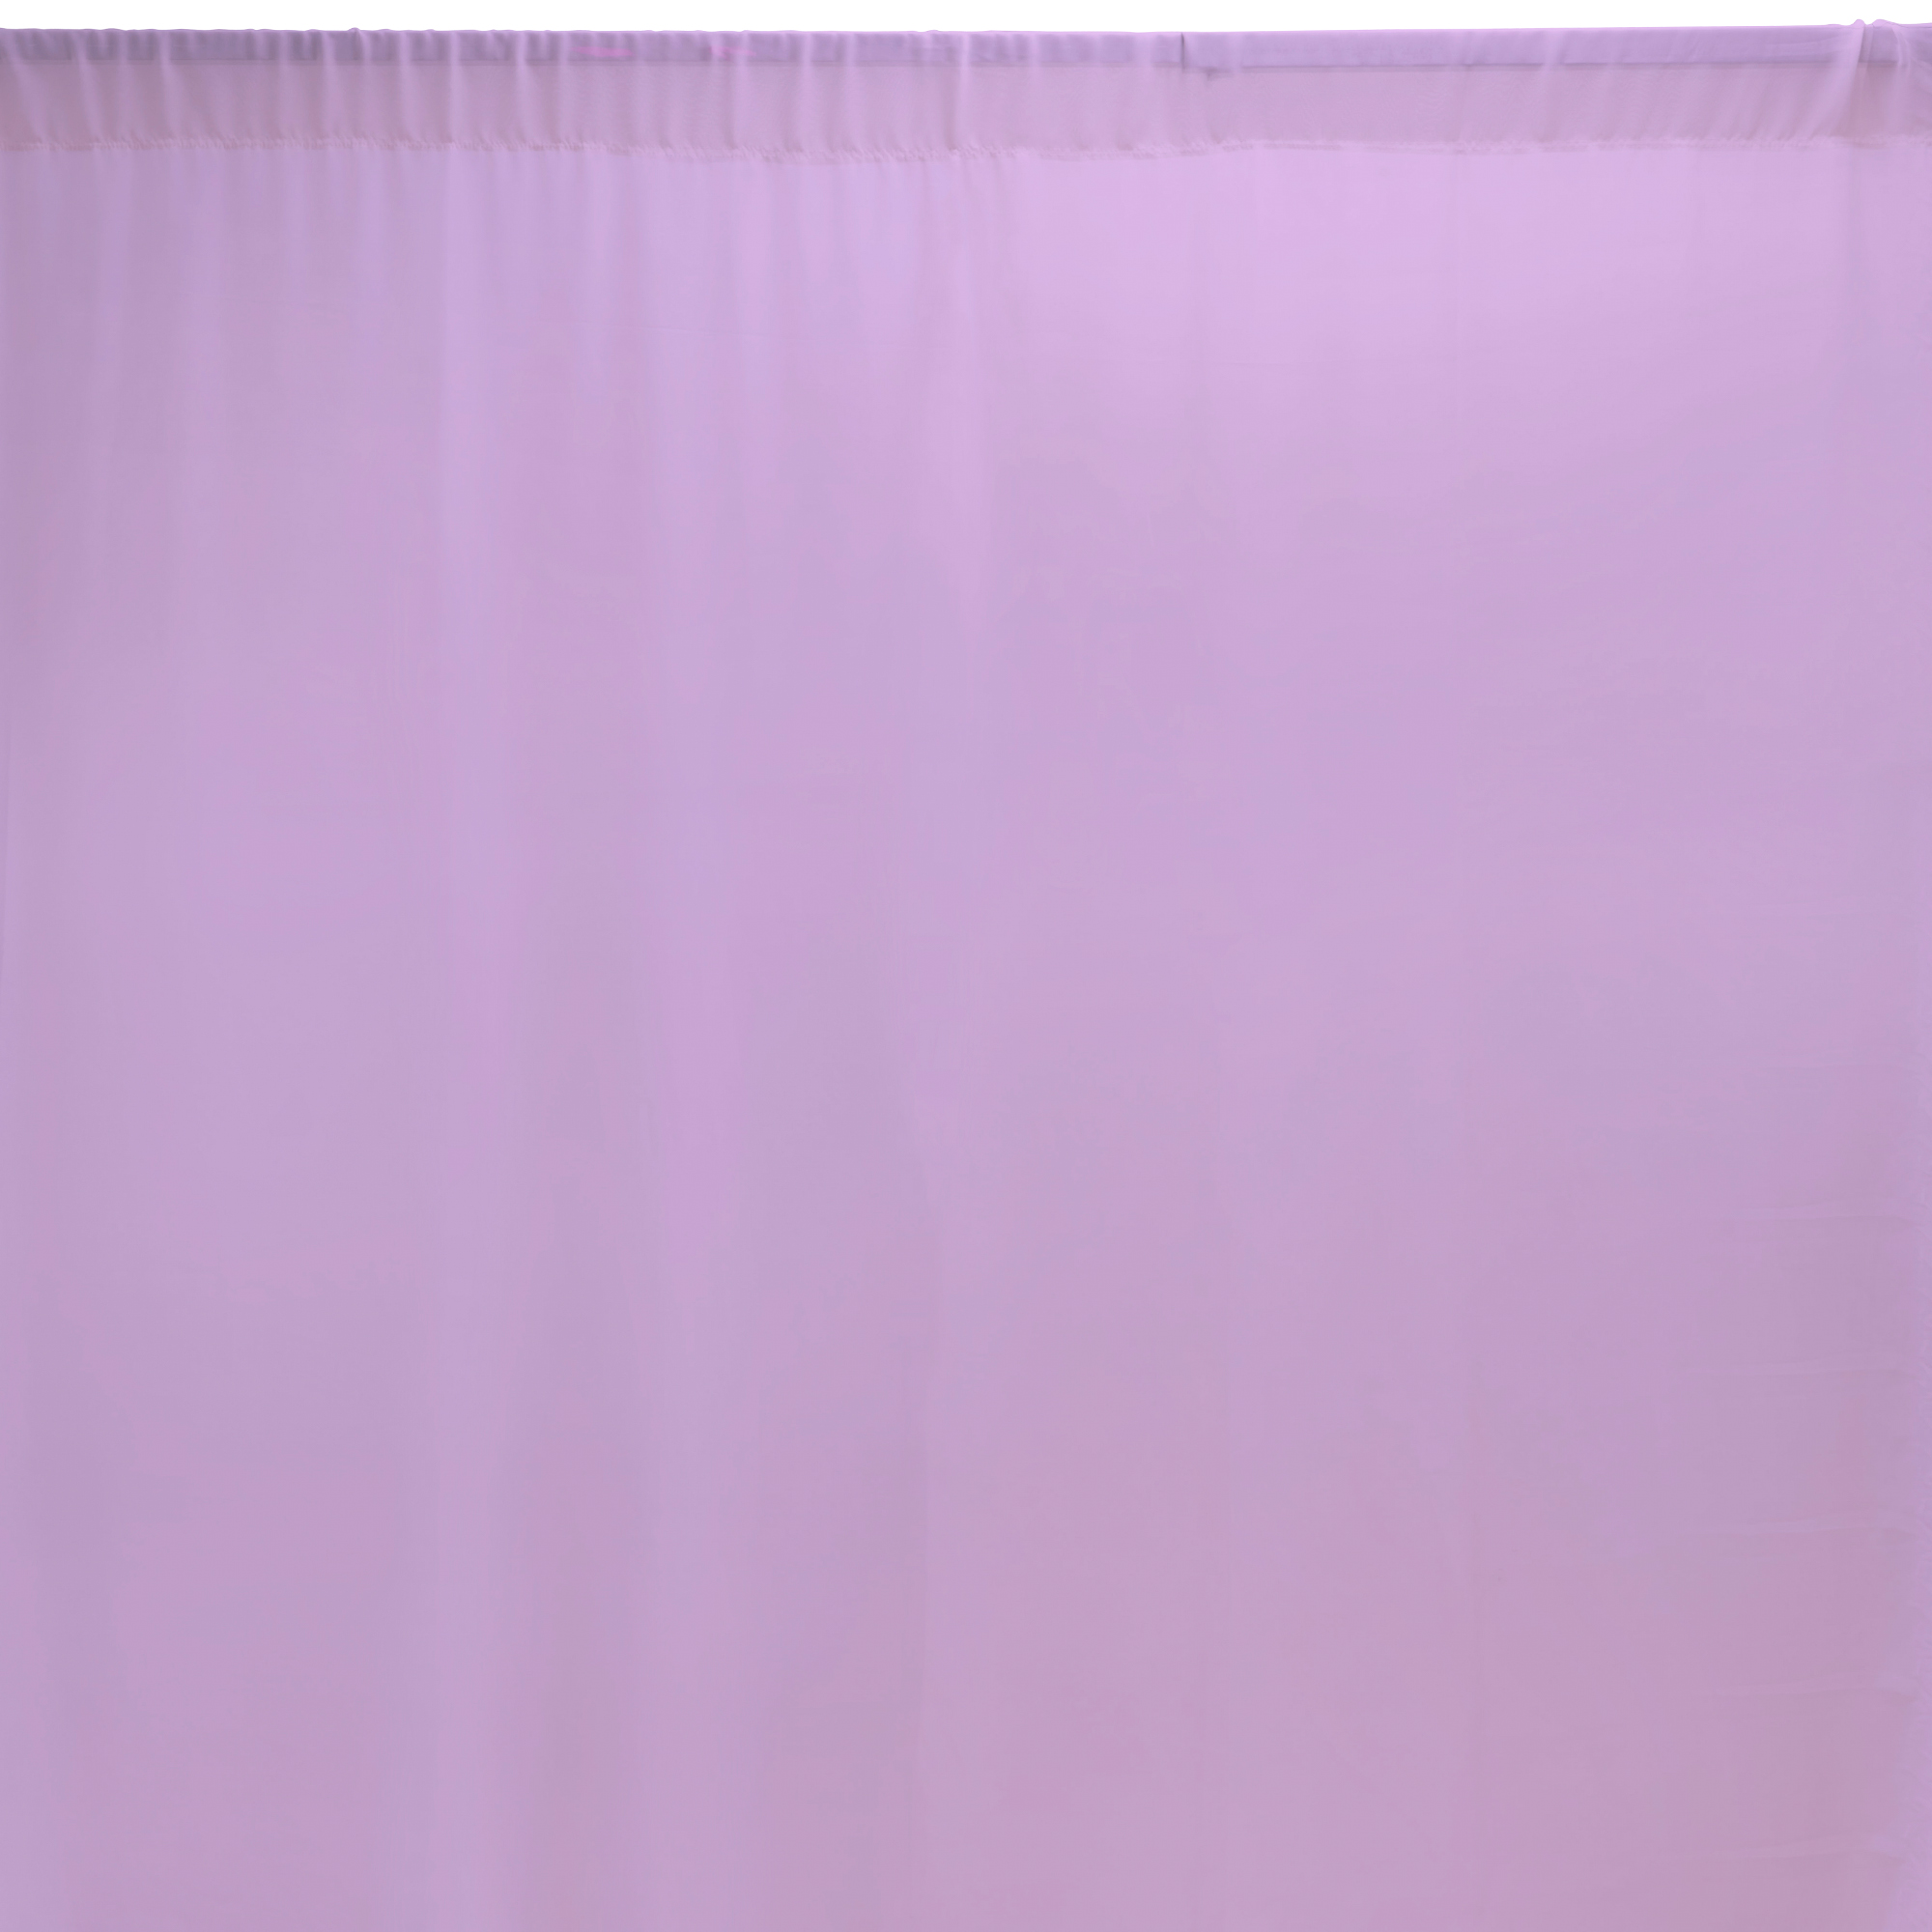 Chiffon Backdrop 5ft x 12ft - Lavender